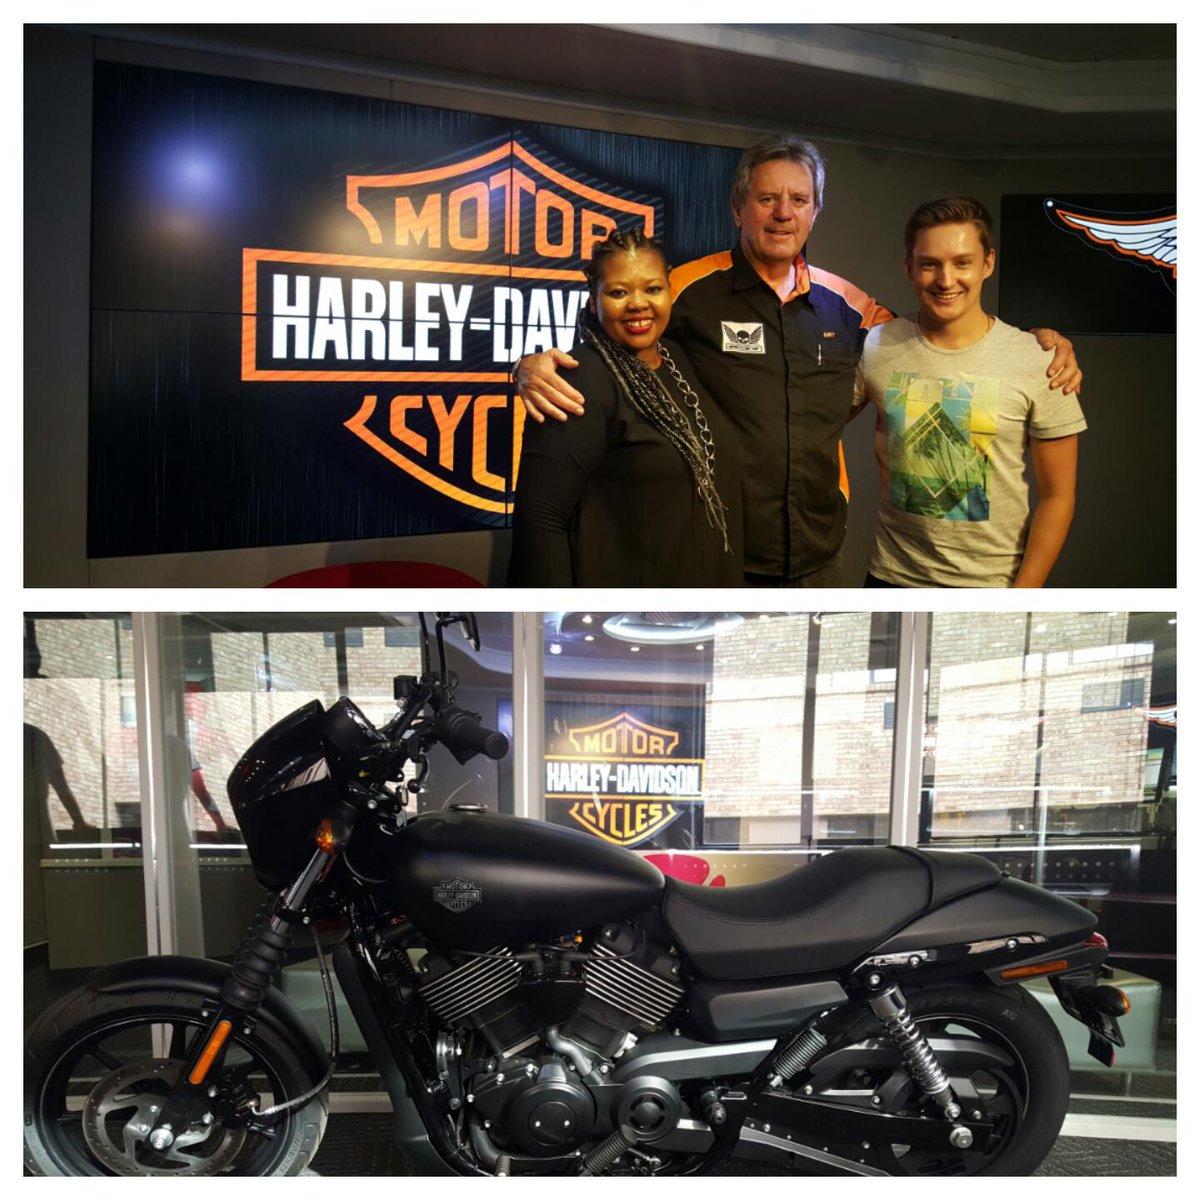 Harley Davidson Street 750 Us Mobil Motor Terbaru Berita Review Panduan Membali Gambar Dan Lebih